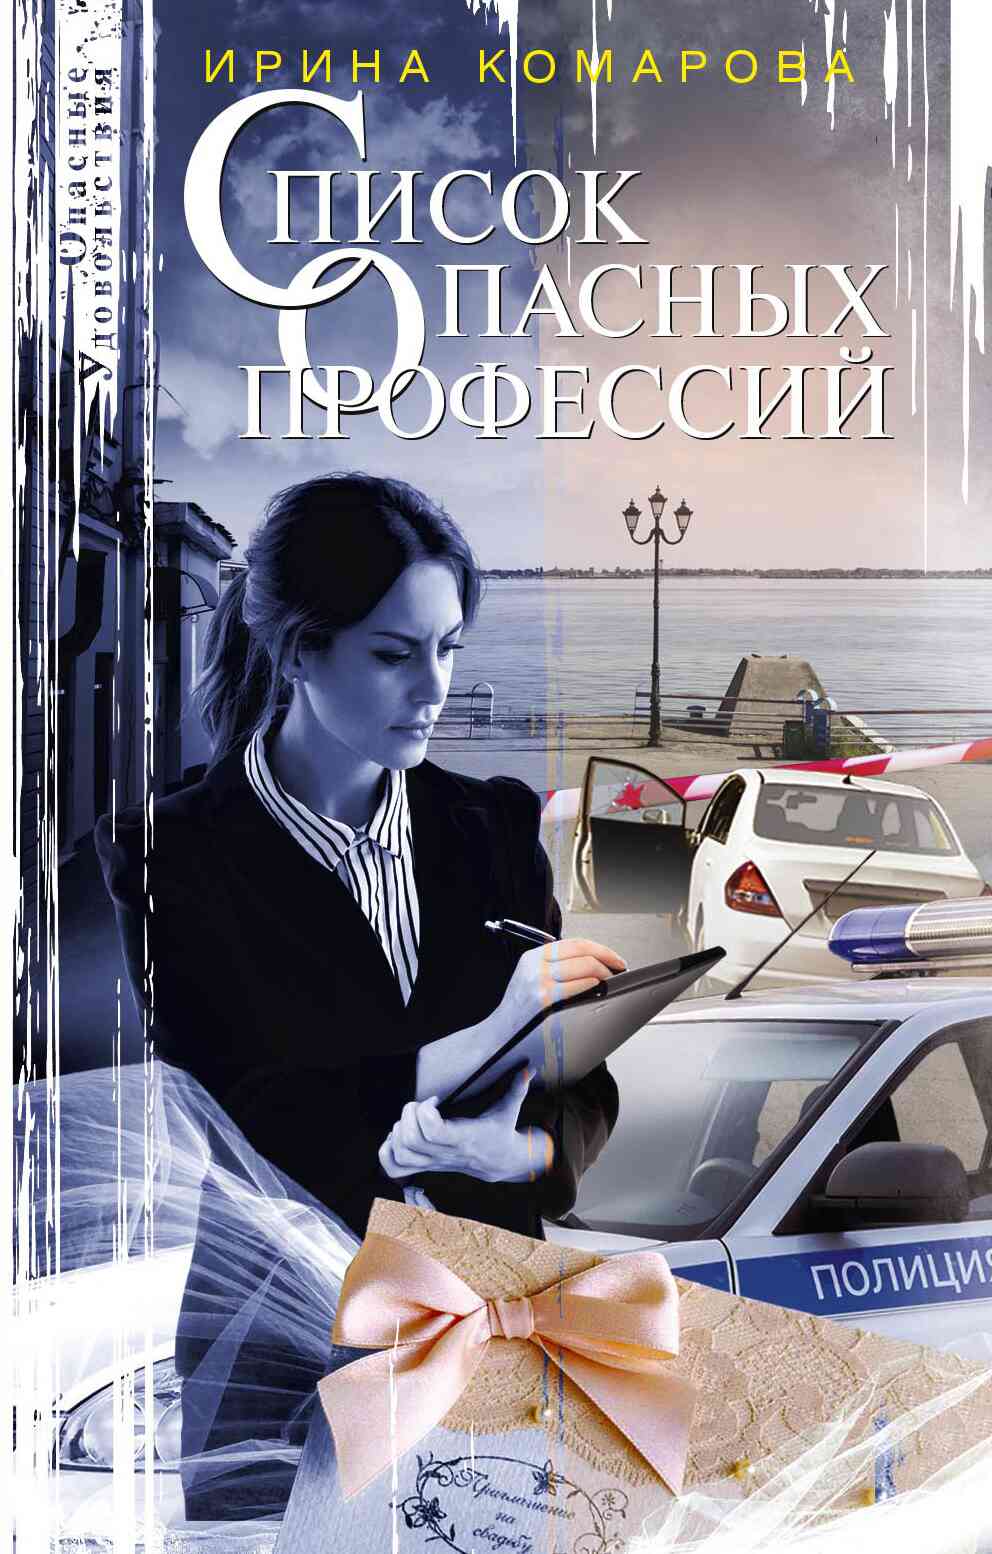 Комарова Ирина - Список опасных профессий скачать бесплатно